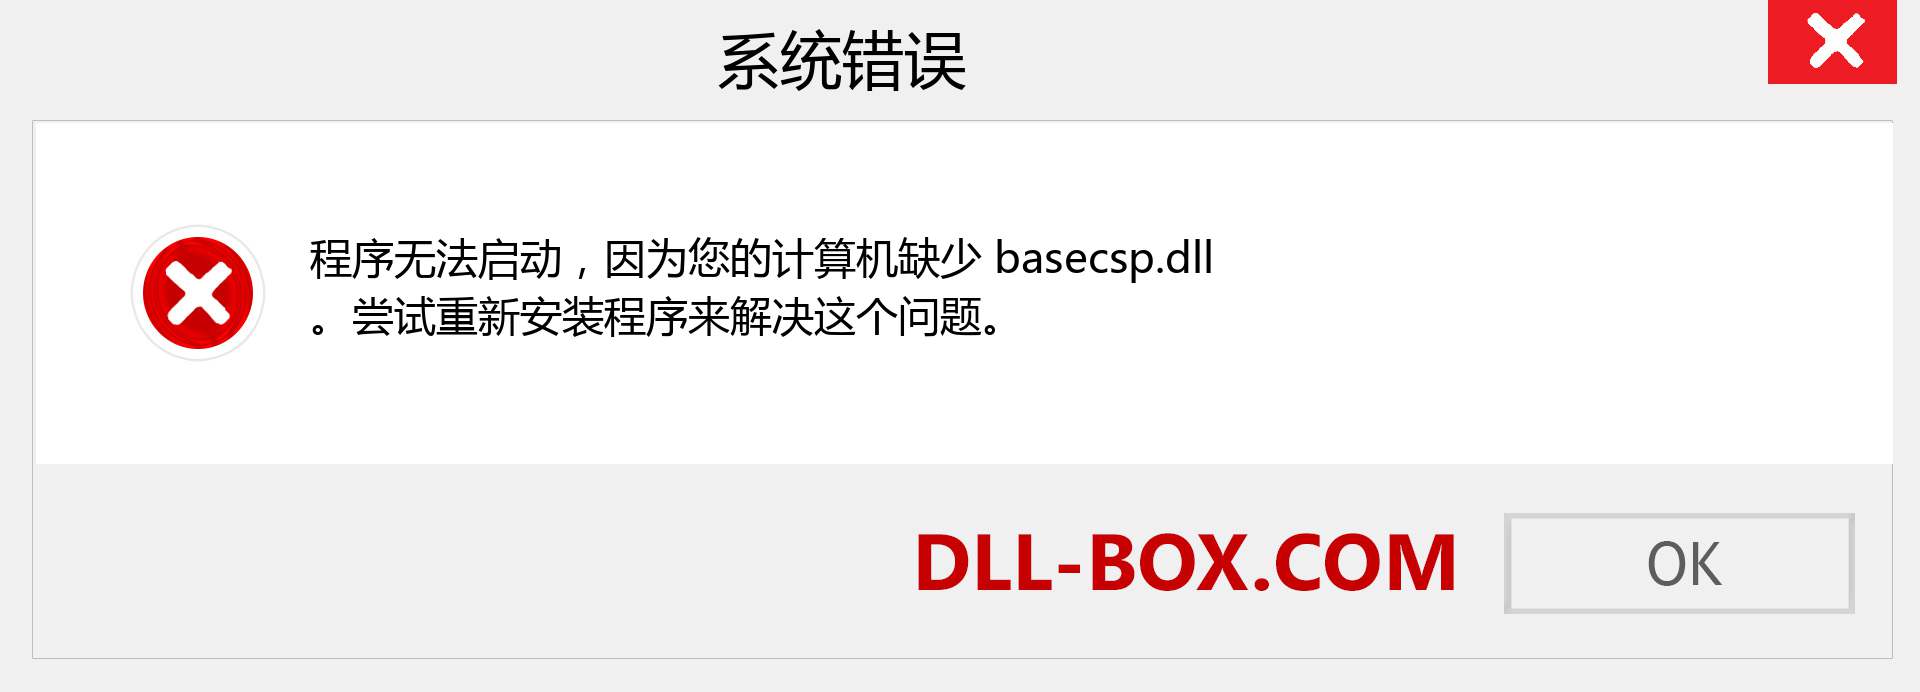 basecsp.dll 文件丢失？。 适用于 Windows 7、8、10 的下载 - 修复 Windows、照片、图像上的 basecsp dll 丢失错误